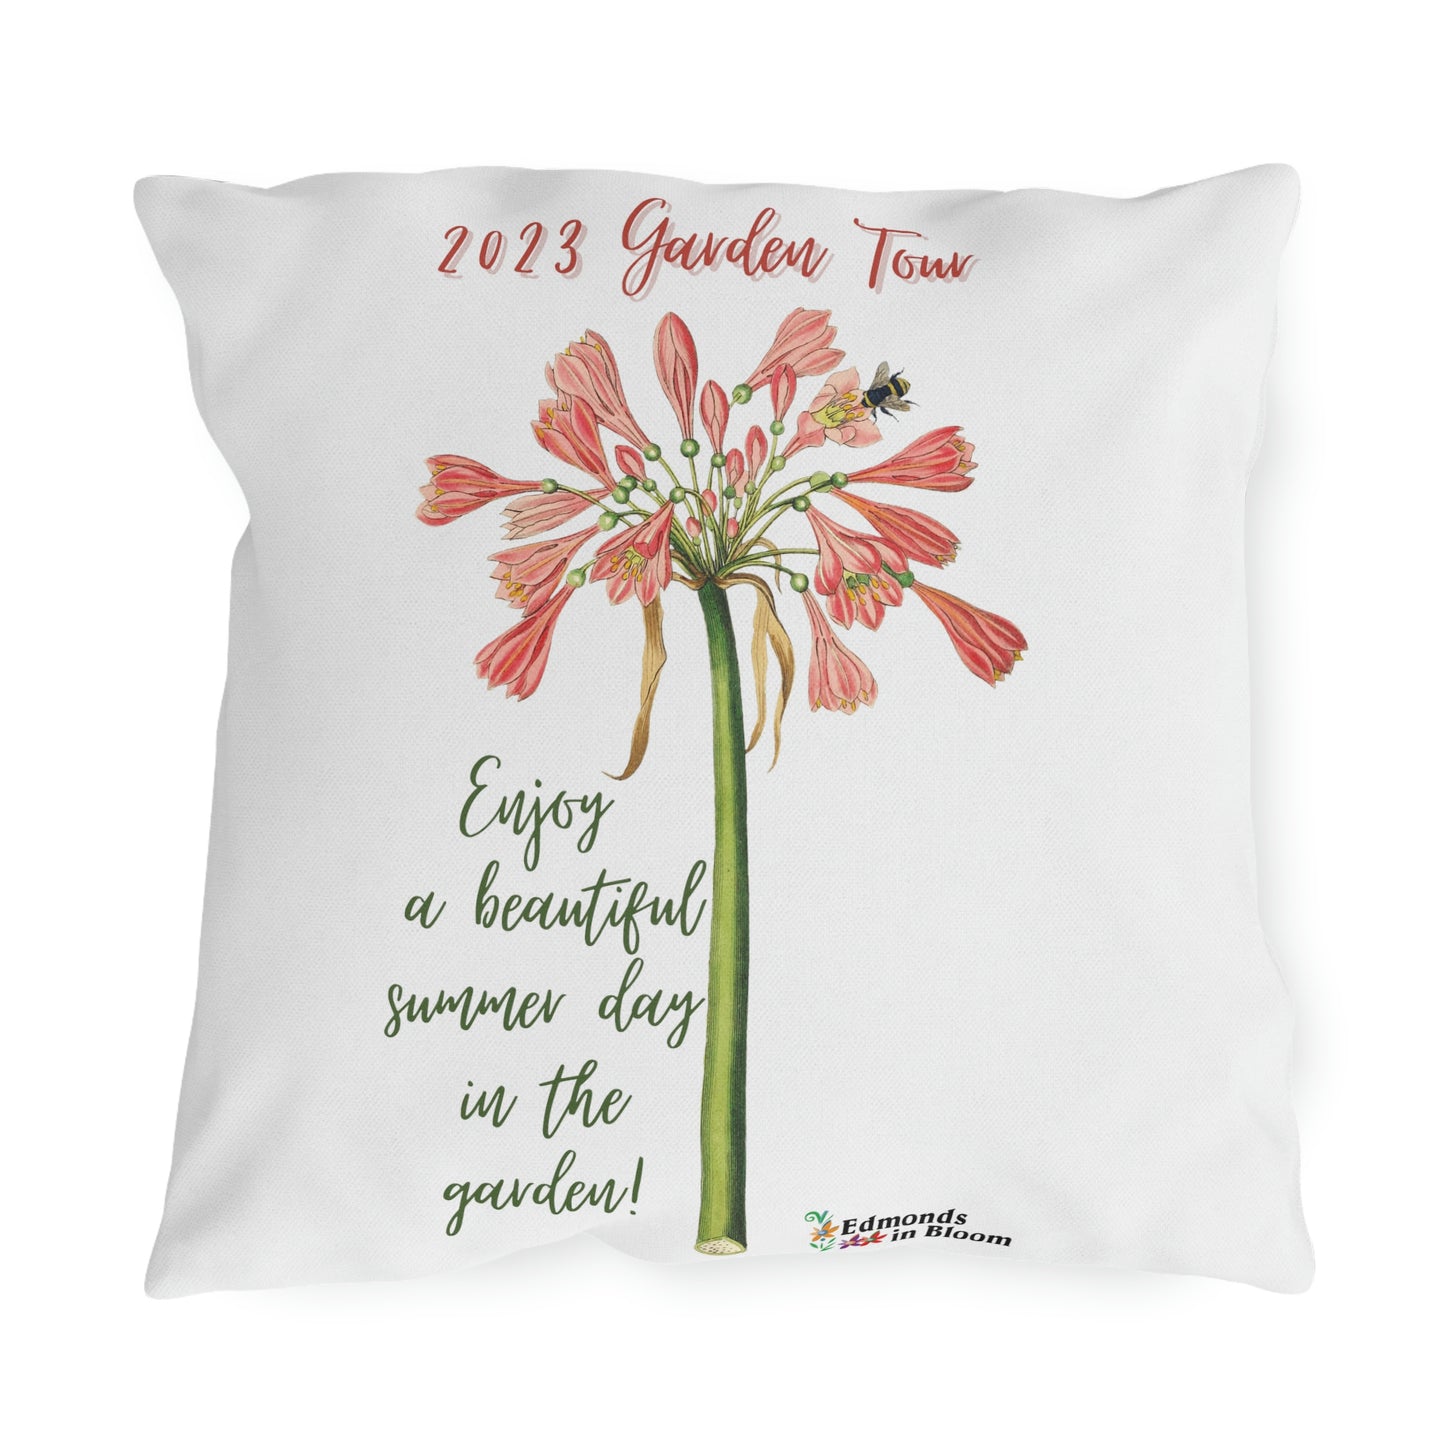 2023 Garden Tour Outdoor Pillows